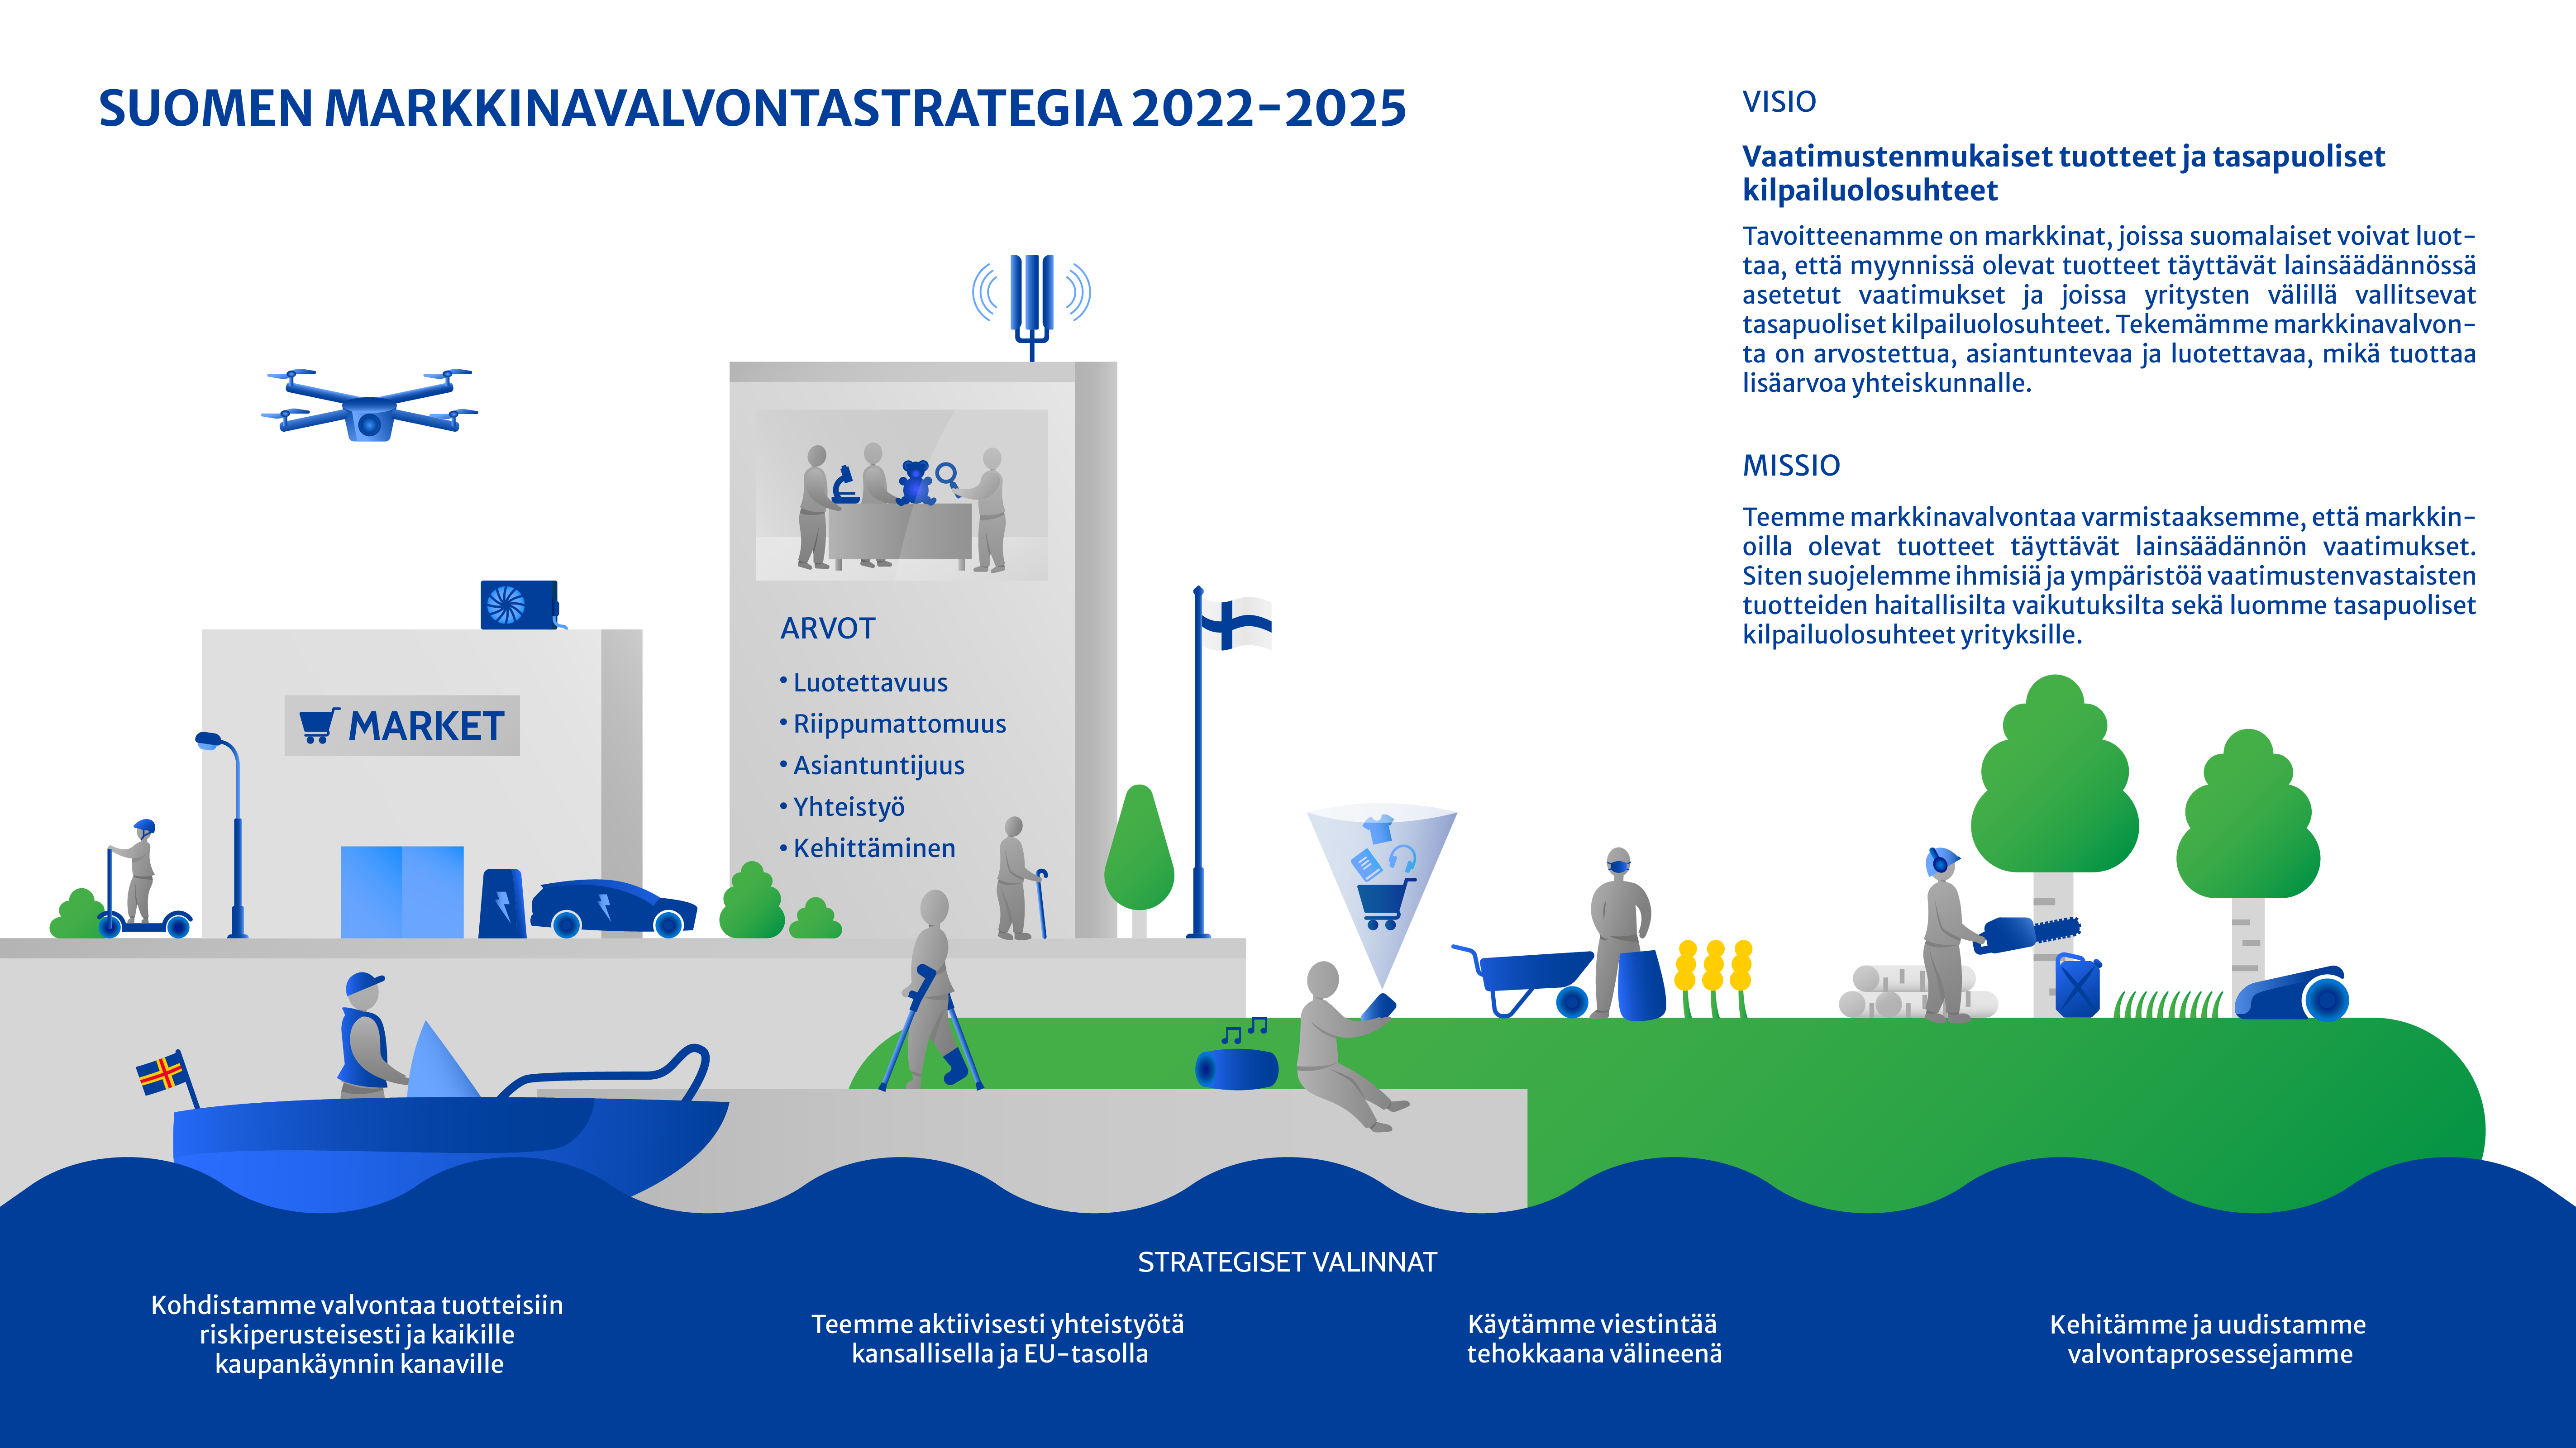 Suomen markkinavalvonstrategiassa 2022-2025 visiona on vaatimustenmukaiset tuotteet ja tasapuoliset kilpailuolosuhteet.